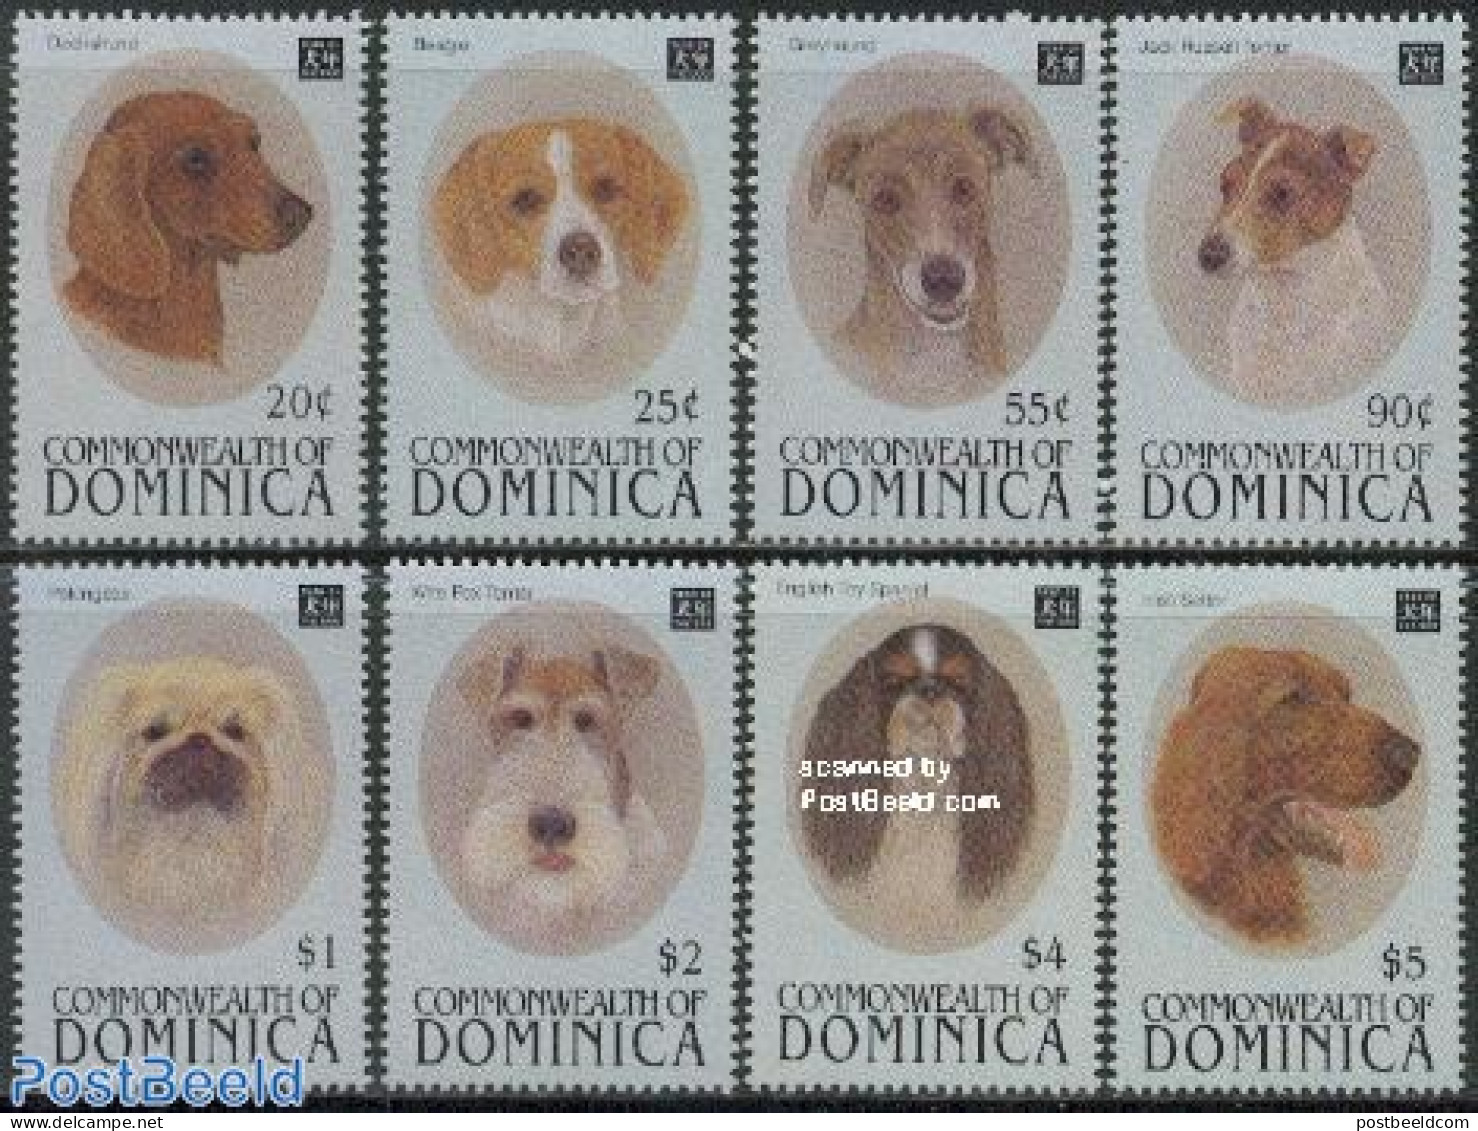 Dominica 1994 Dogs 8v, Mint NH, Nature - Dogs - Dominicaine (République)